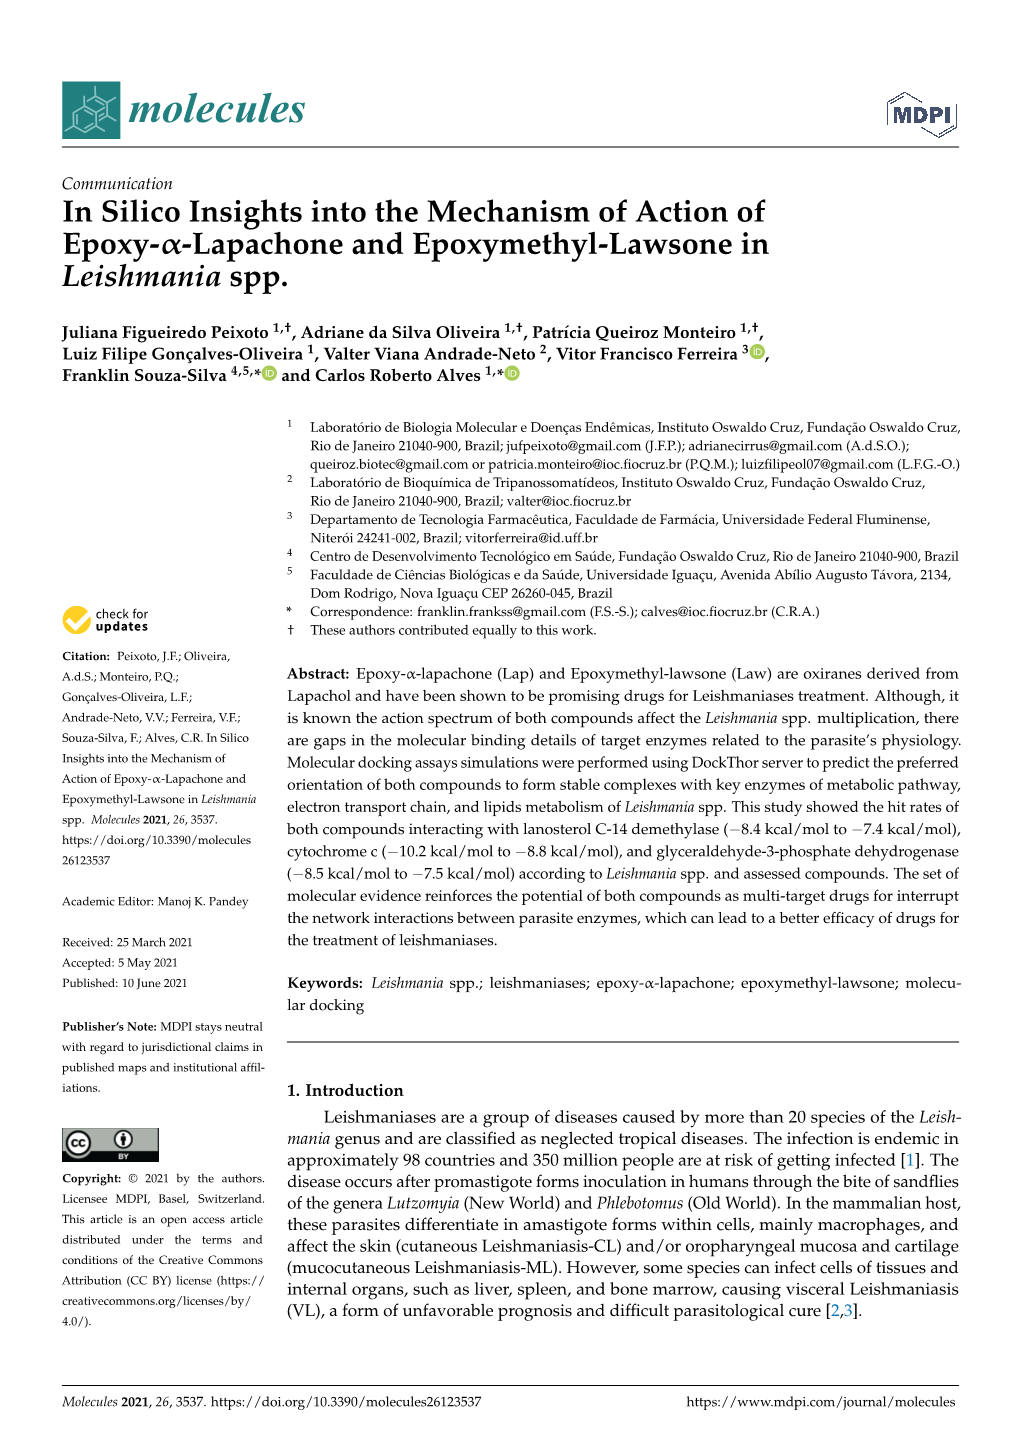 Lapachone and Epoxymethyl-Lawsone in Leishmania Spp